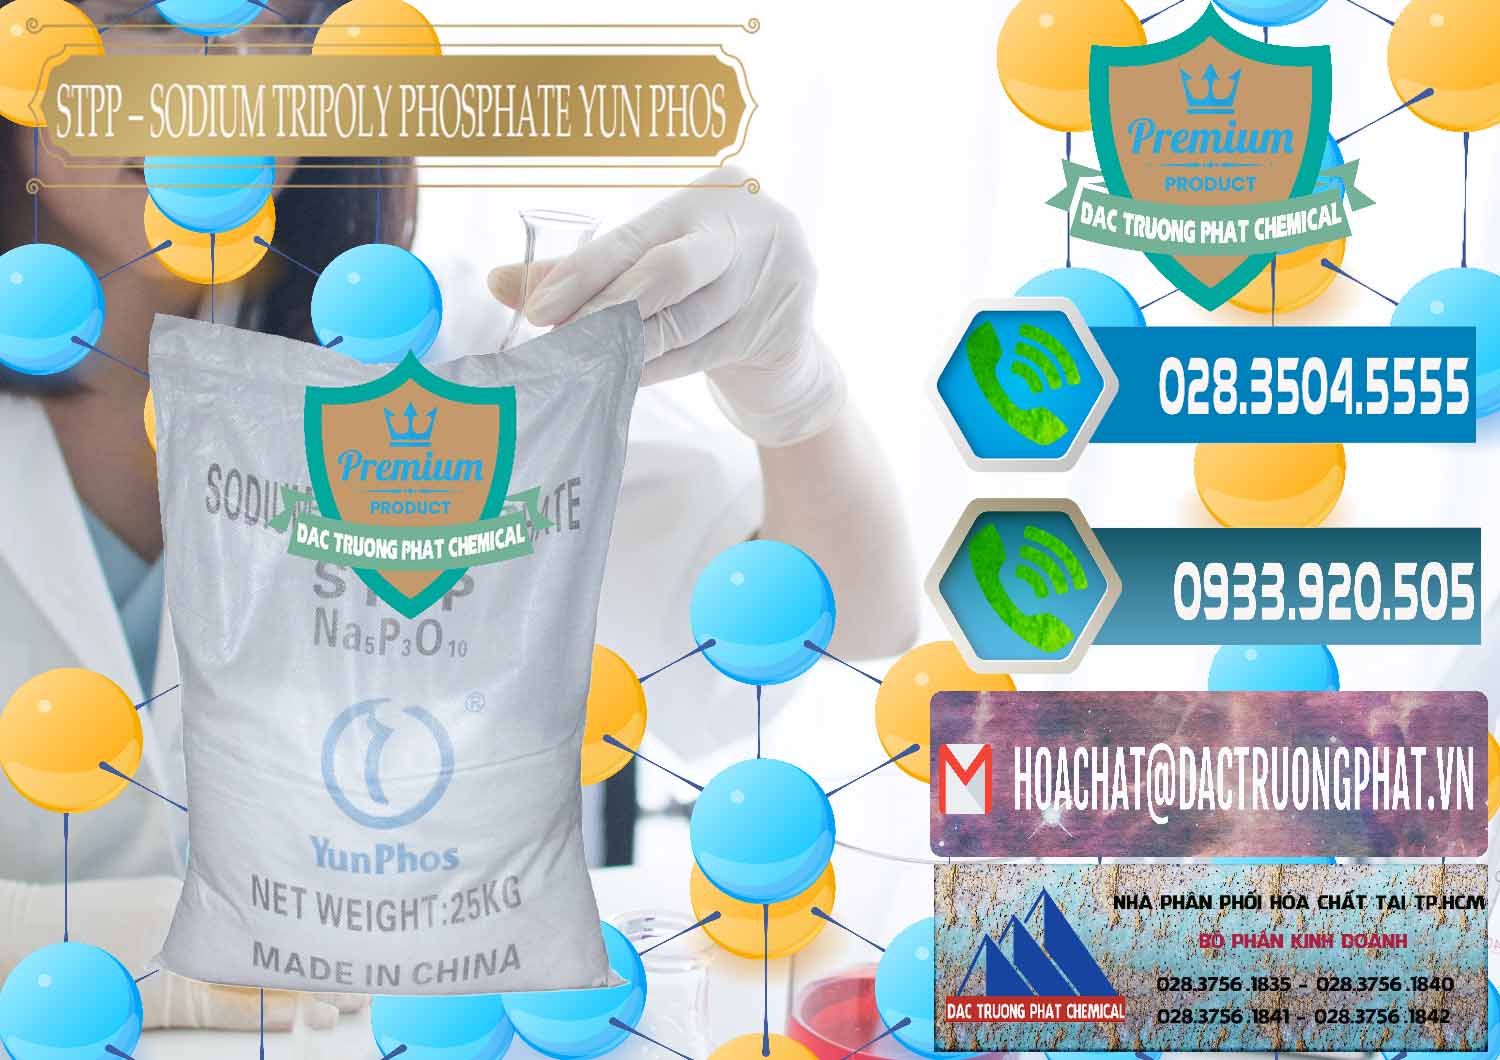 Cty chuyên bán - cung ứng Sodium Tripoly Phosphate - STPP Yun Phos Trung Quốc China - 0153 - Công ty phân phối ( cung ứng ) hóa chất tại TP.HCM - congtyhoachat.net